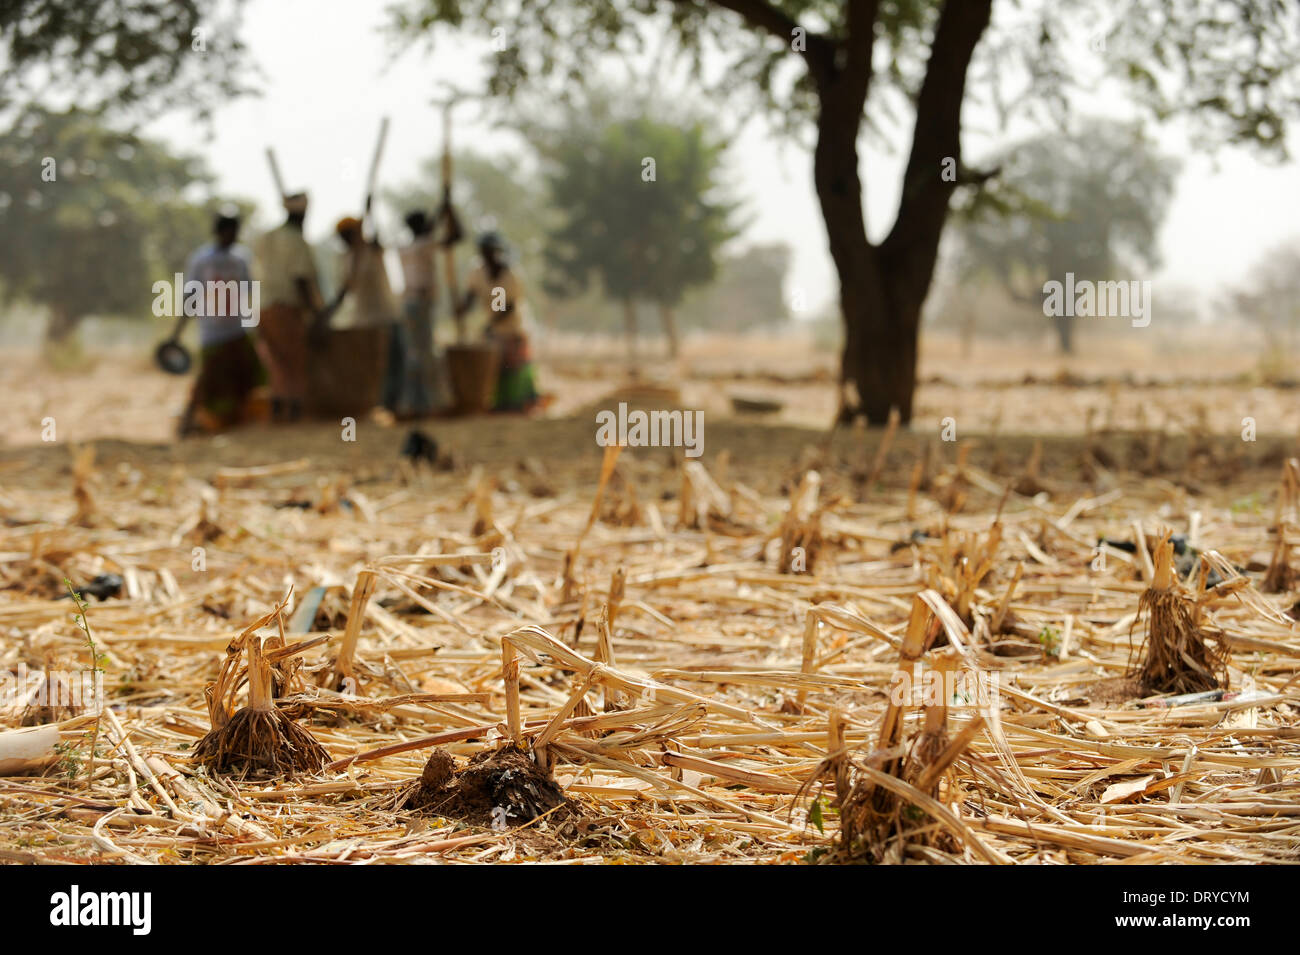 BURKINA FASO Kaya, aldea Korsimoro, la mujer libra el mijo, la región del Sahel es regularmente afectadas por la sequía y el hambre Foto de stock